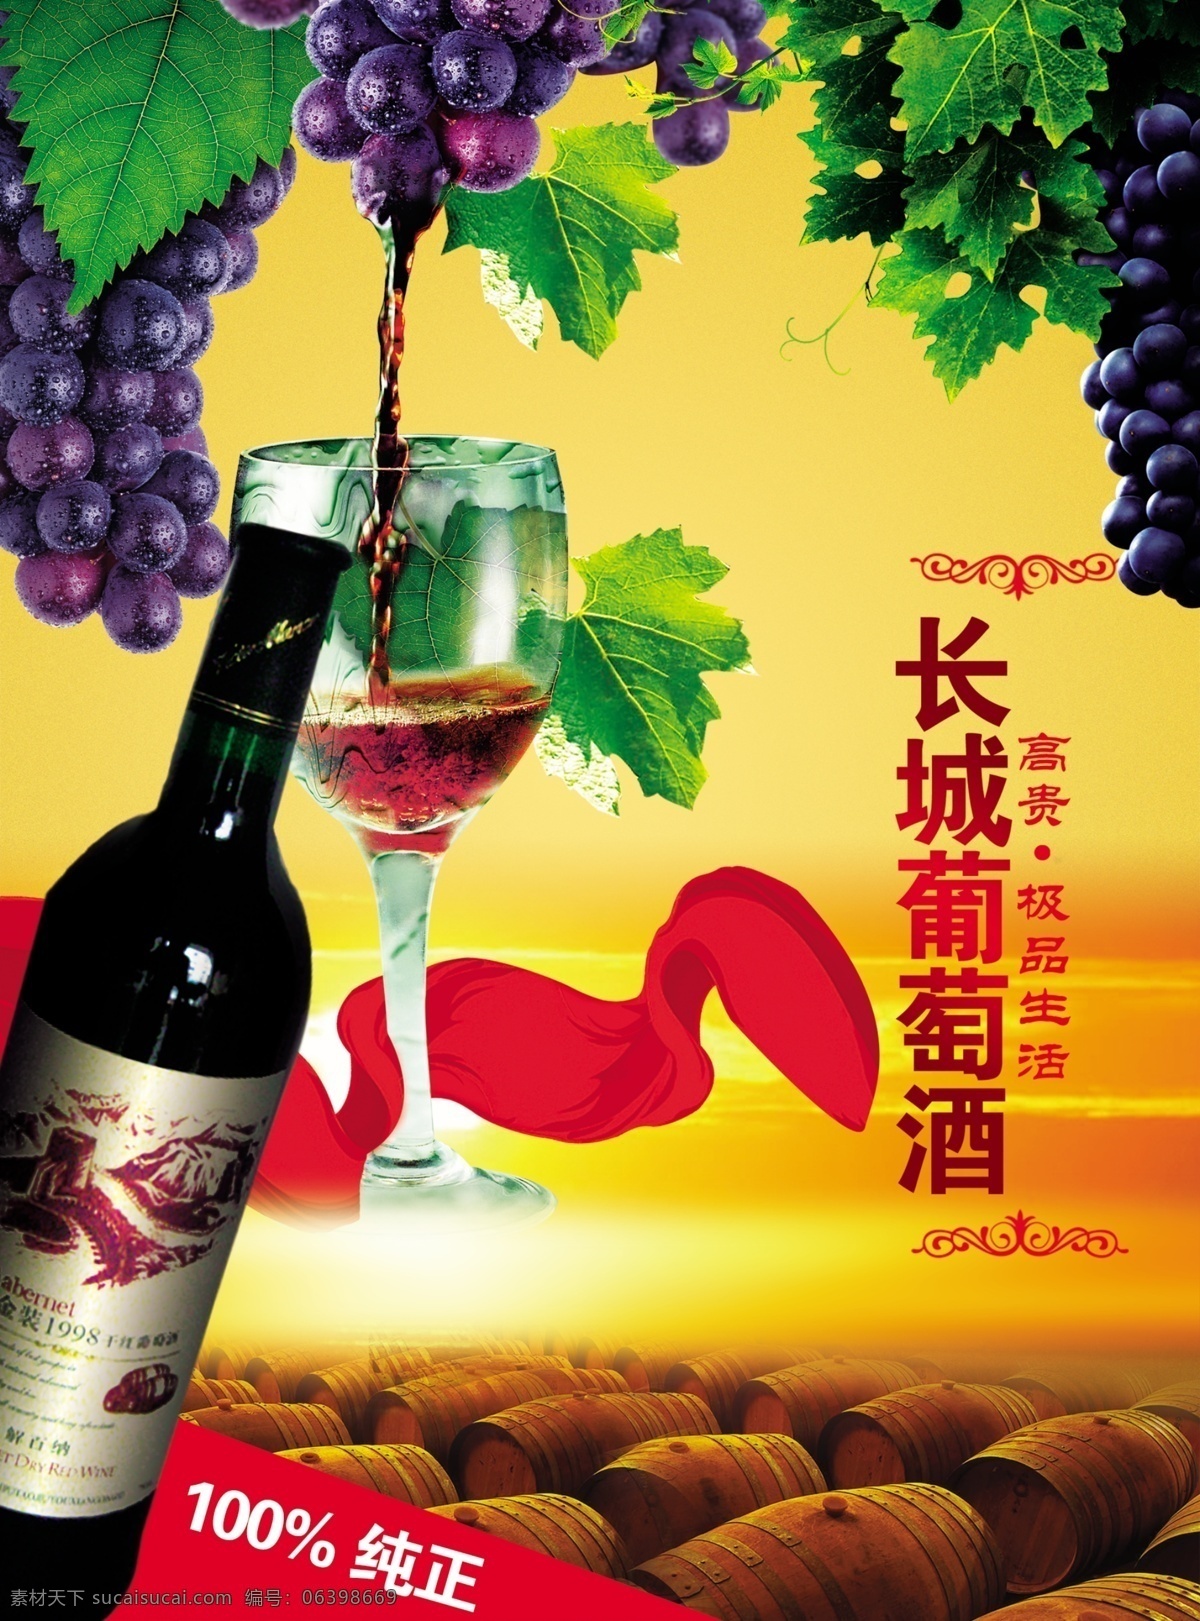 长城 葡萄酒 宣传海报 psd素材 长城葡萄酒 红酒海报 葡萄 宣传单 彩页 dm